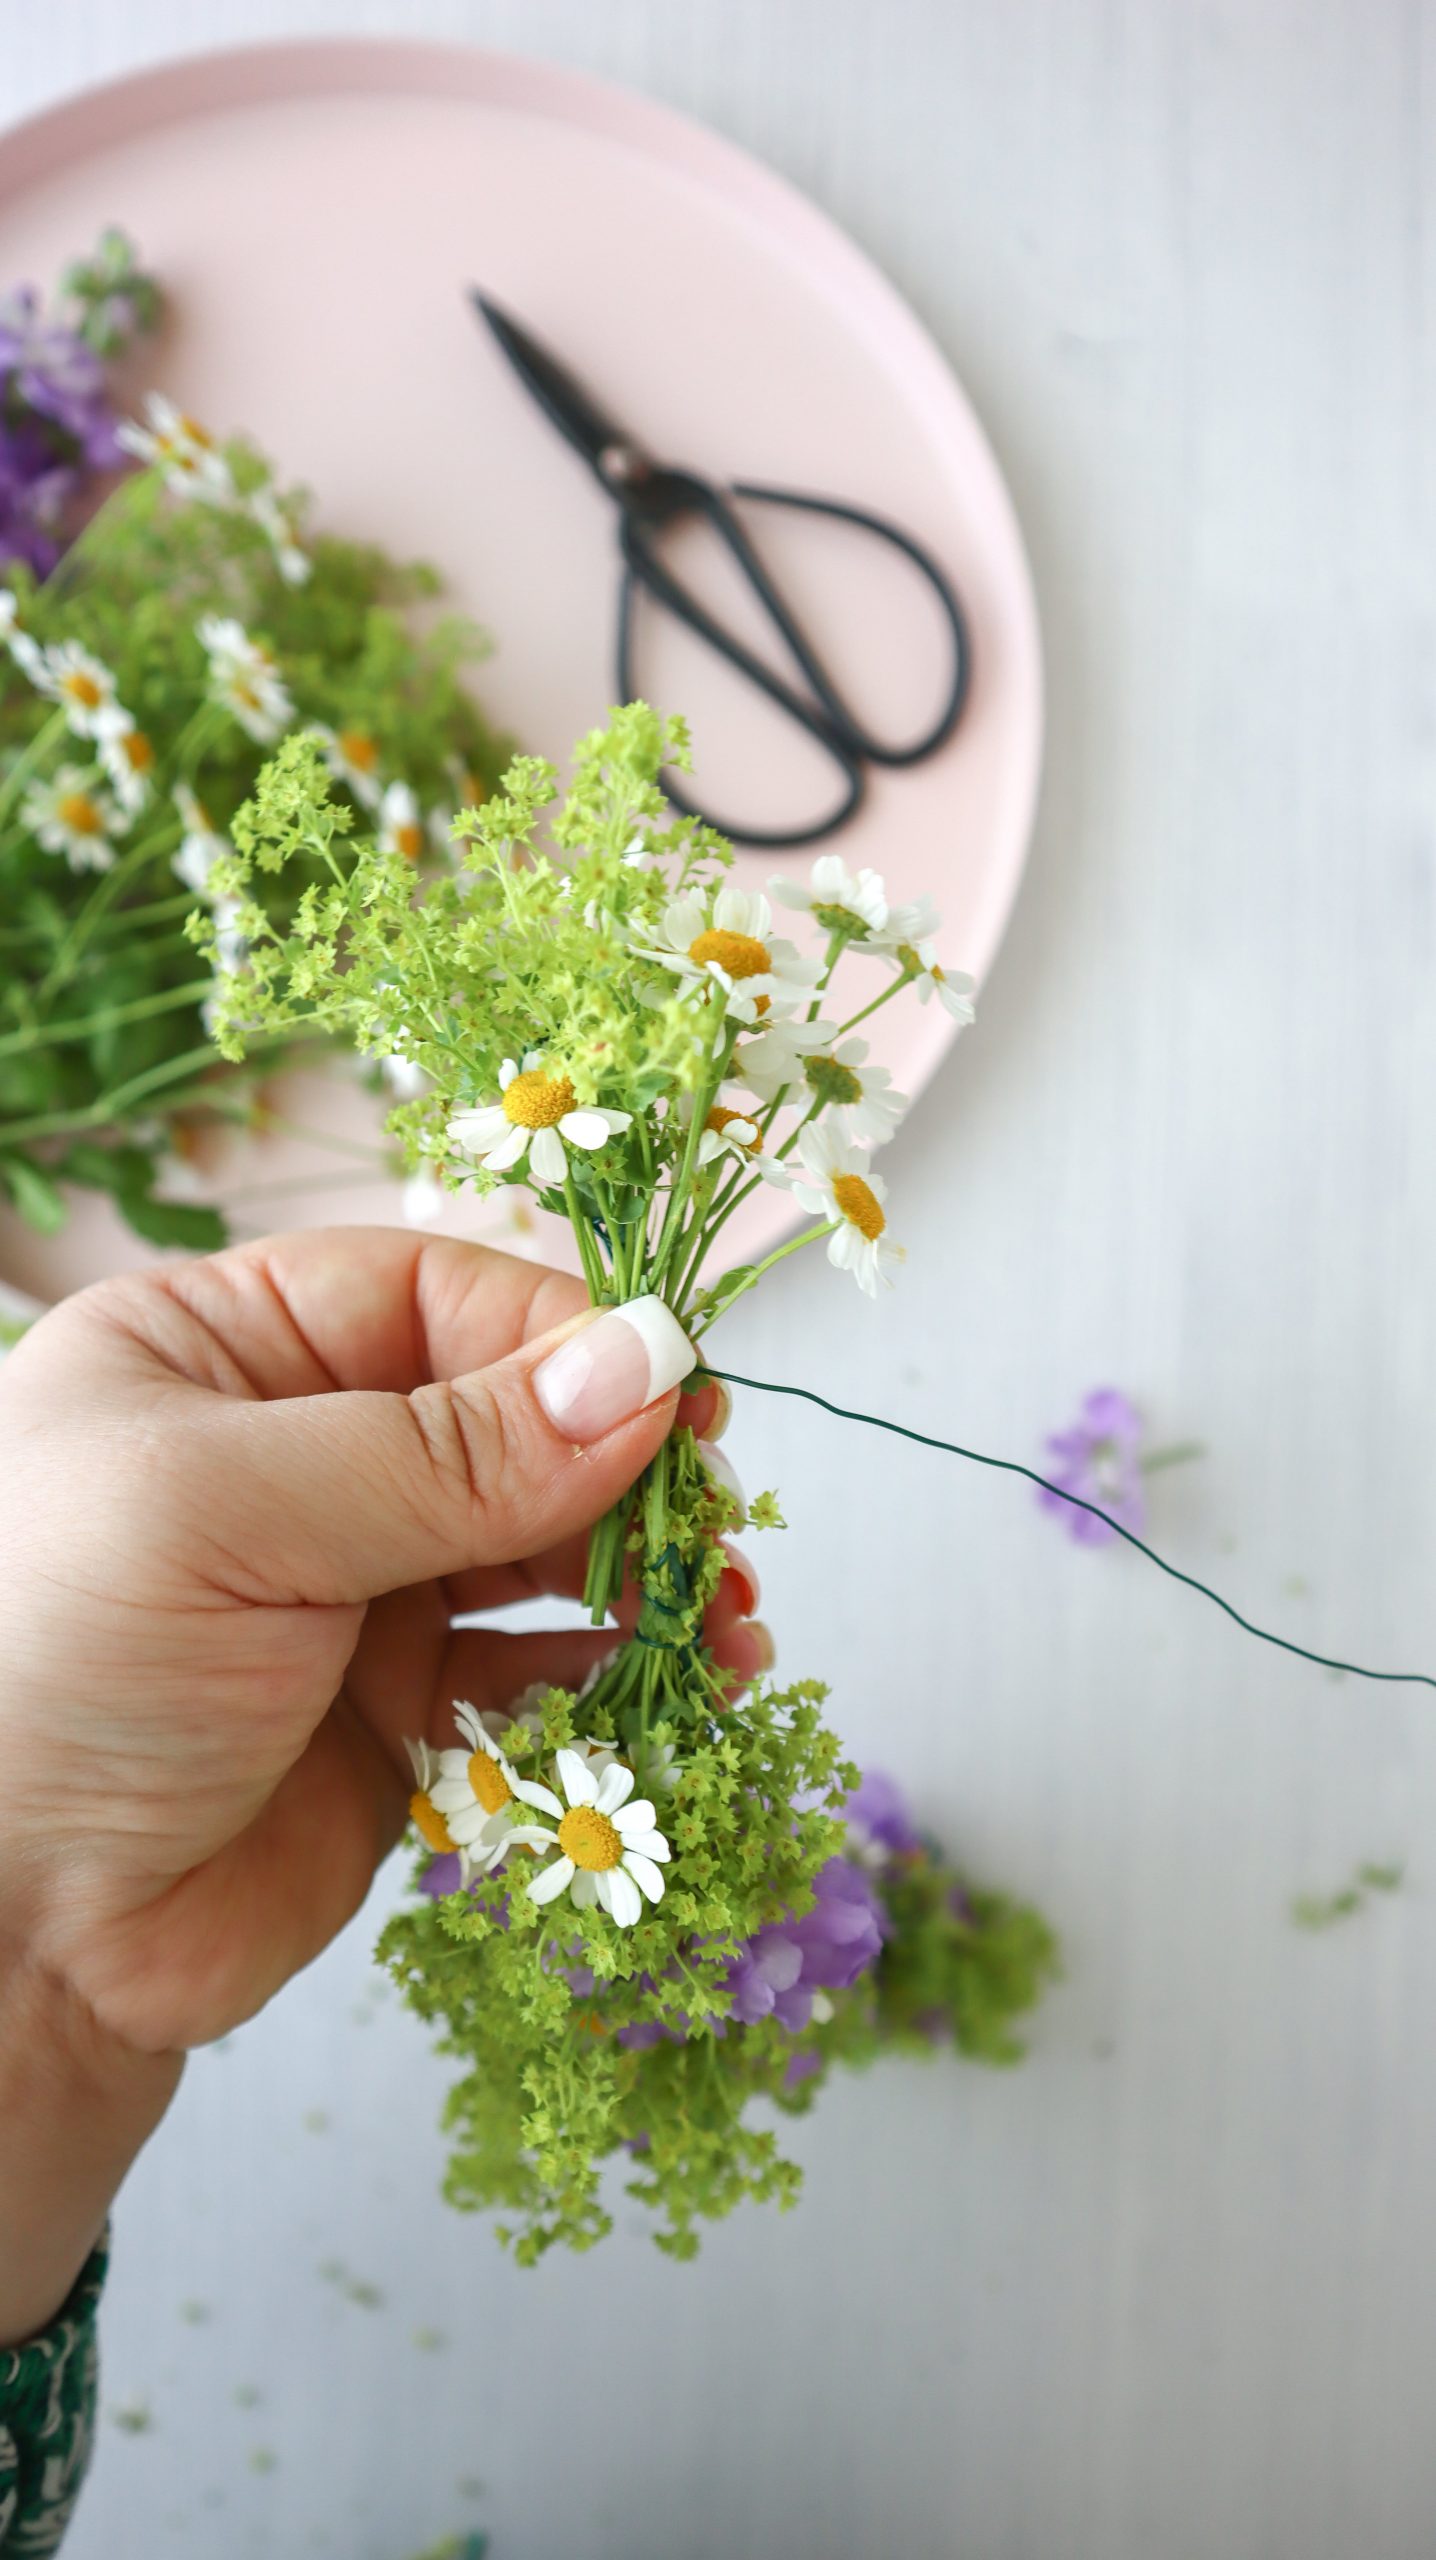 So einfach ist Blumenkranz binden: Als Haarschmuck oder Deko für JGA, Hochzeit, Festivals & Midsommar, mit dieser Anleitung ist Blumenkränze selber machen ganz leicht!